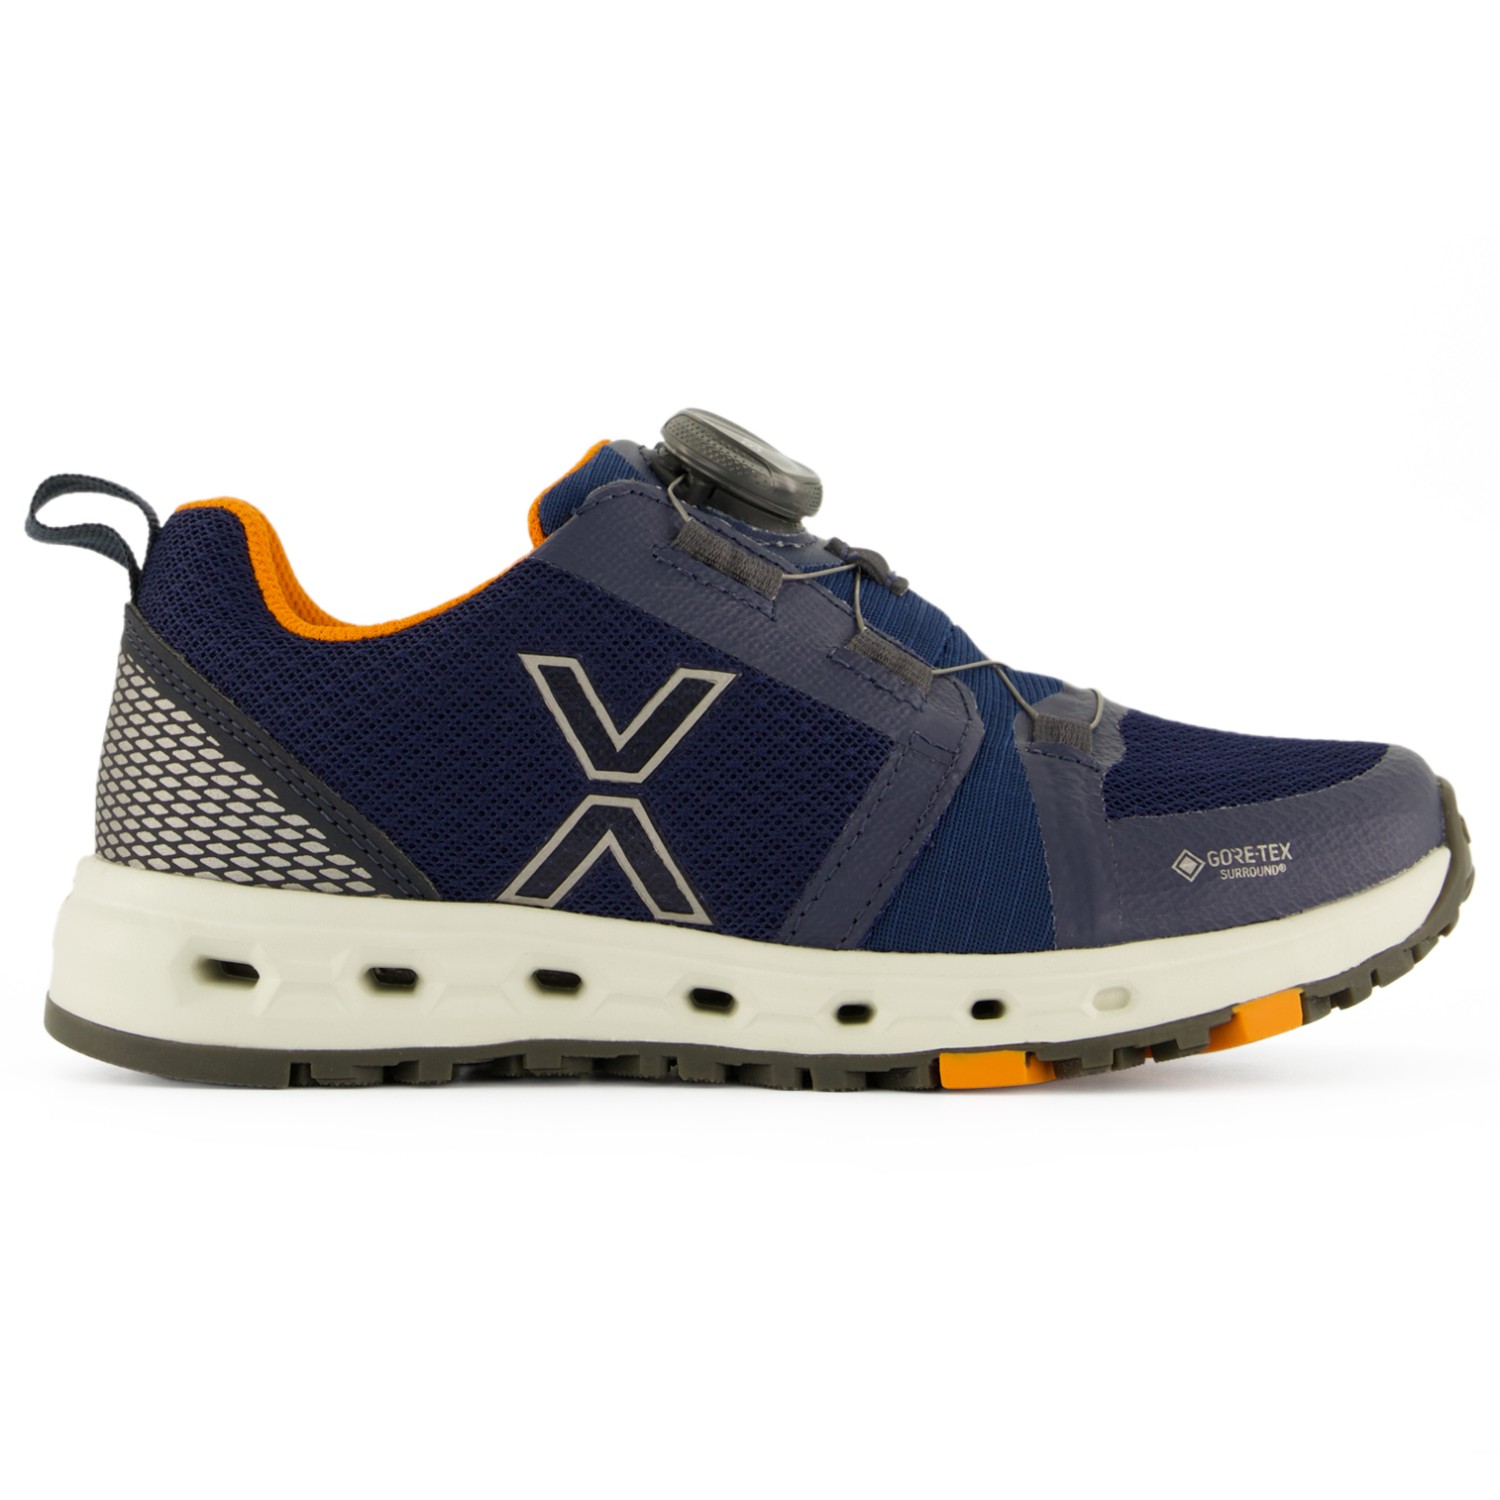 Повседневная обувь Vado Kid's Air Low Boa GTX Surround, темно синий